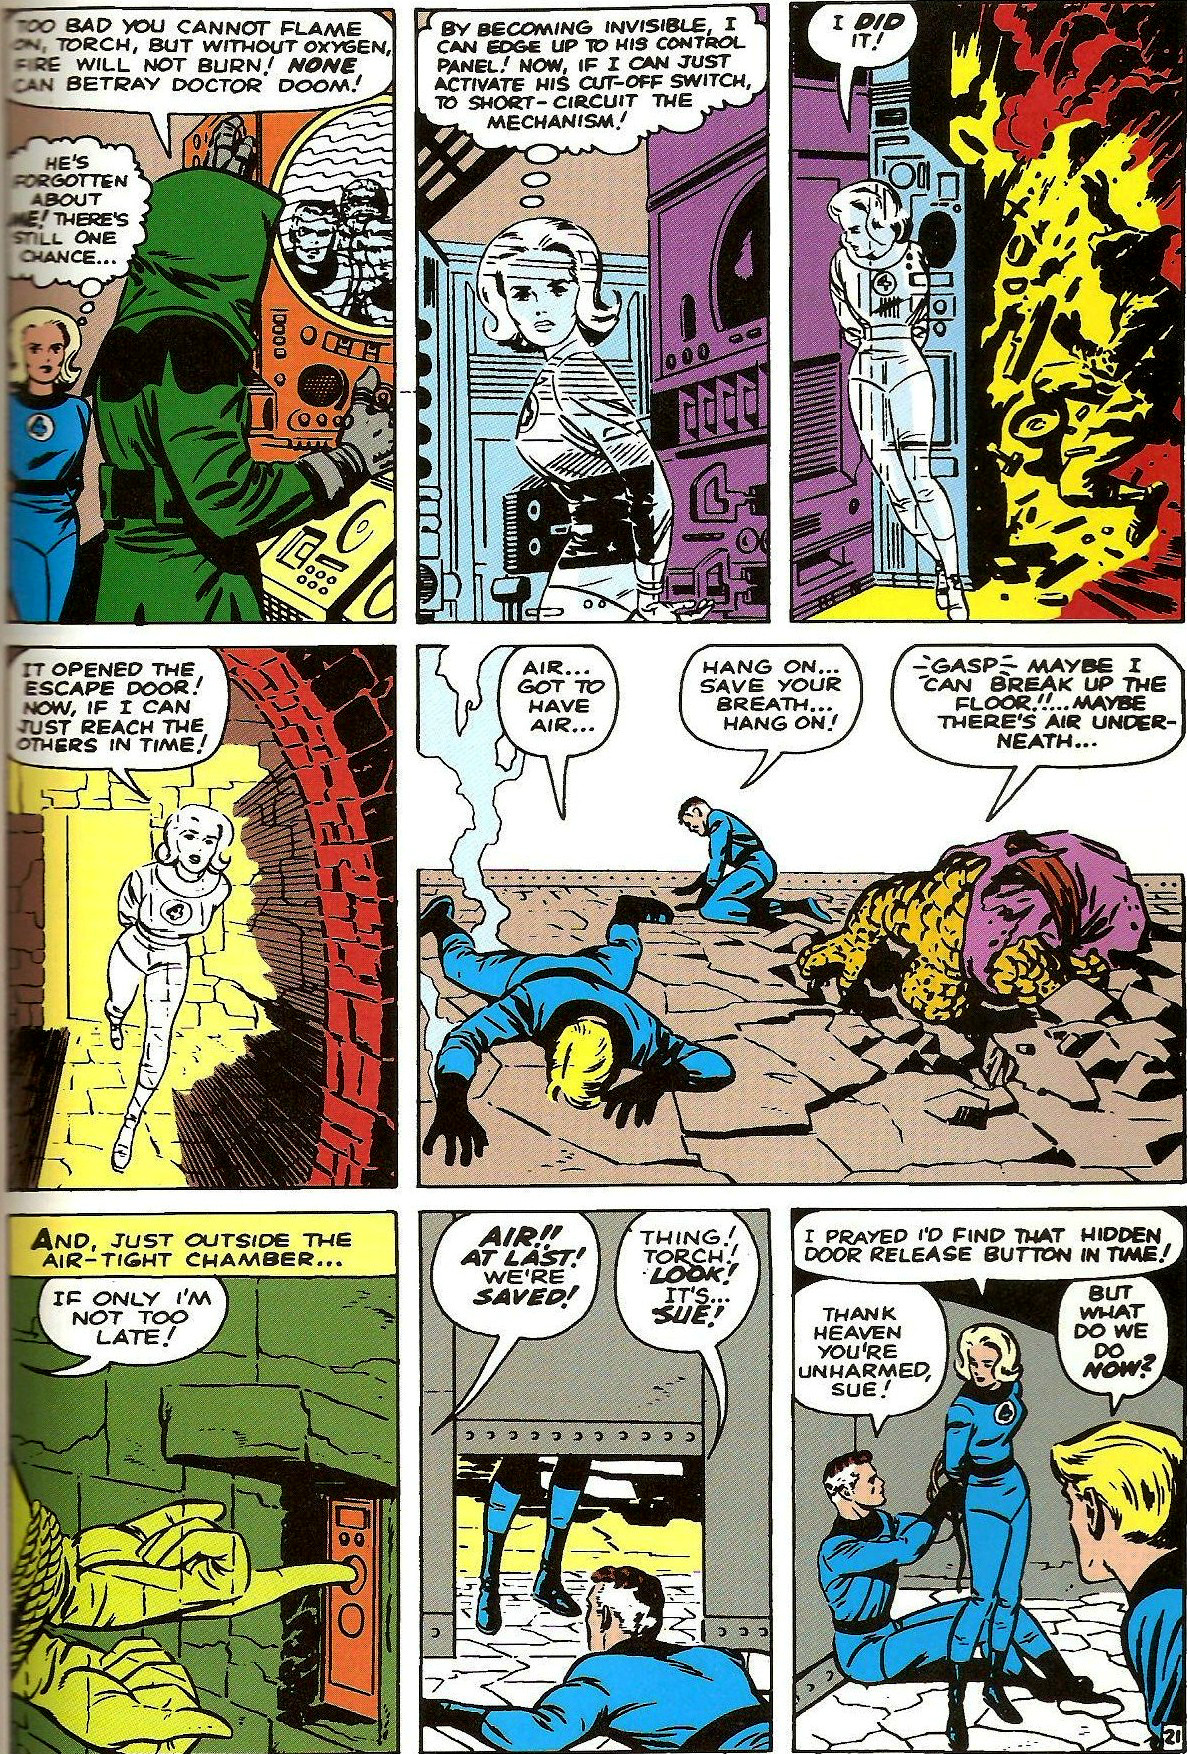 Fantastic Four (Vol. 1) #5 (1962)